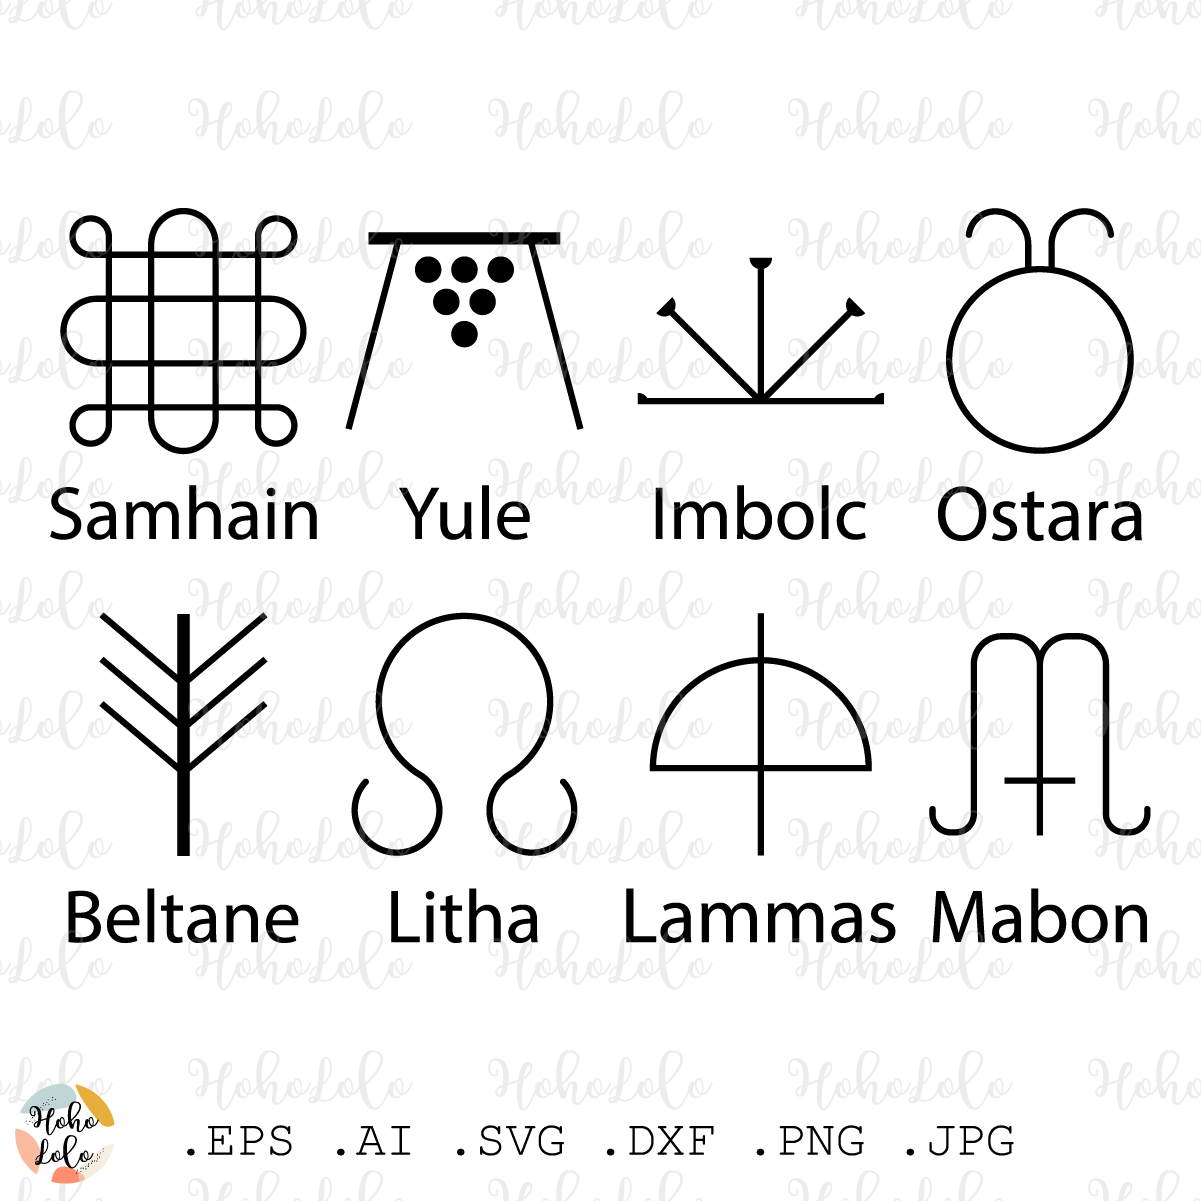 wiccan symbols